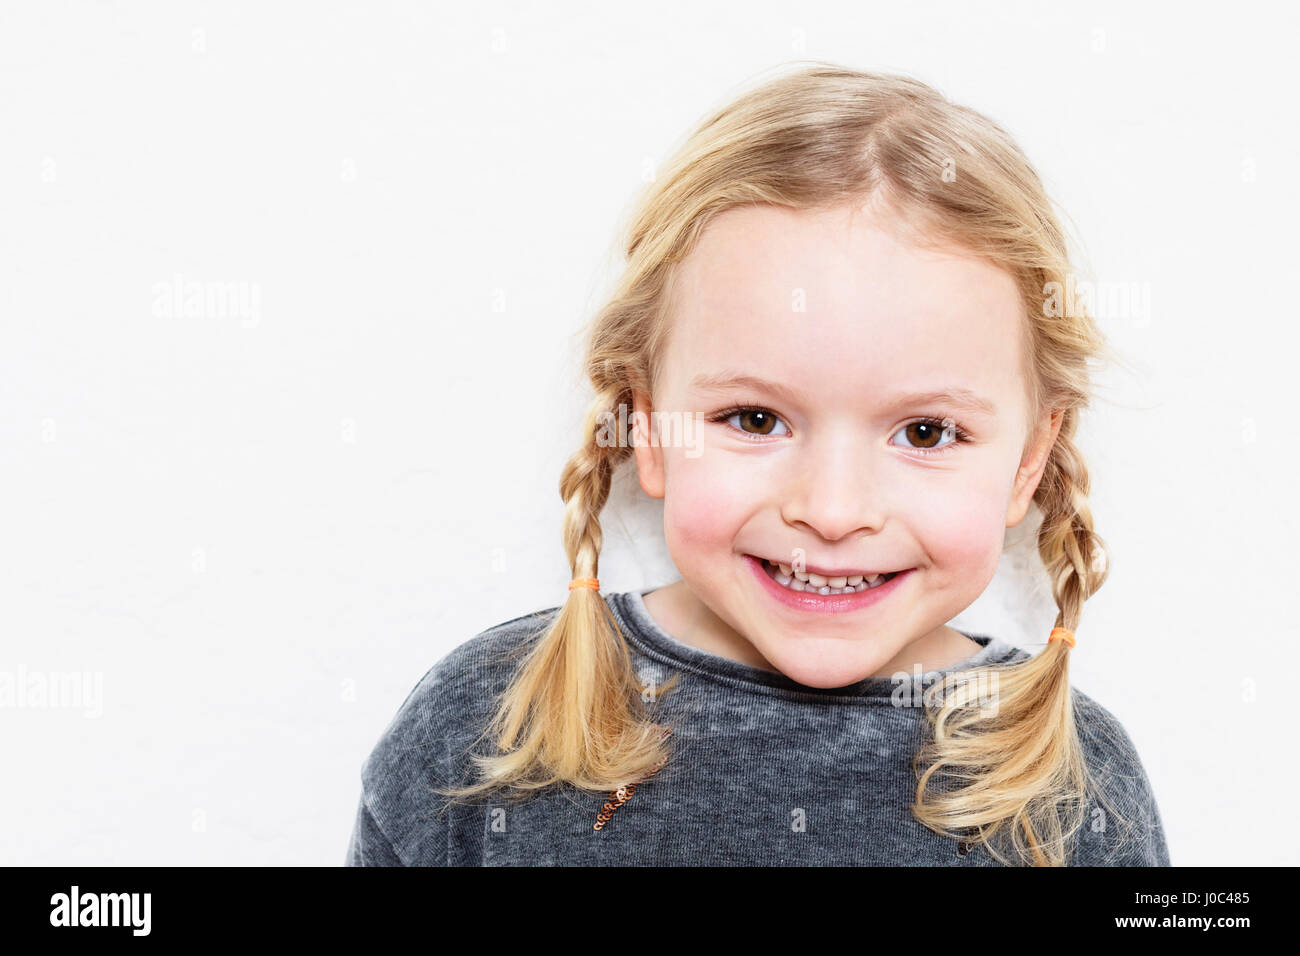 Porträt des jungen Mädchens, lächelnd, vor weißem Hintergrund Stockfoto